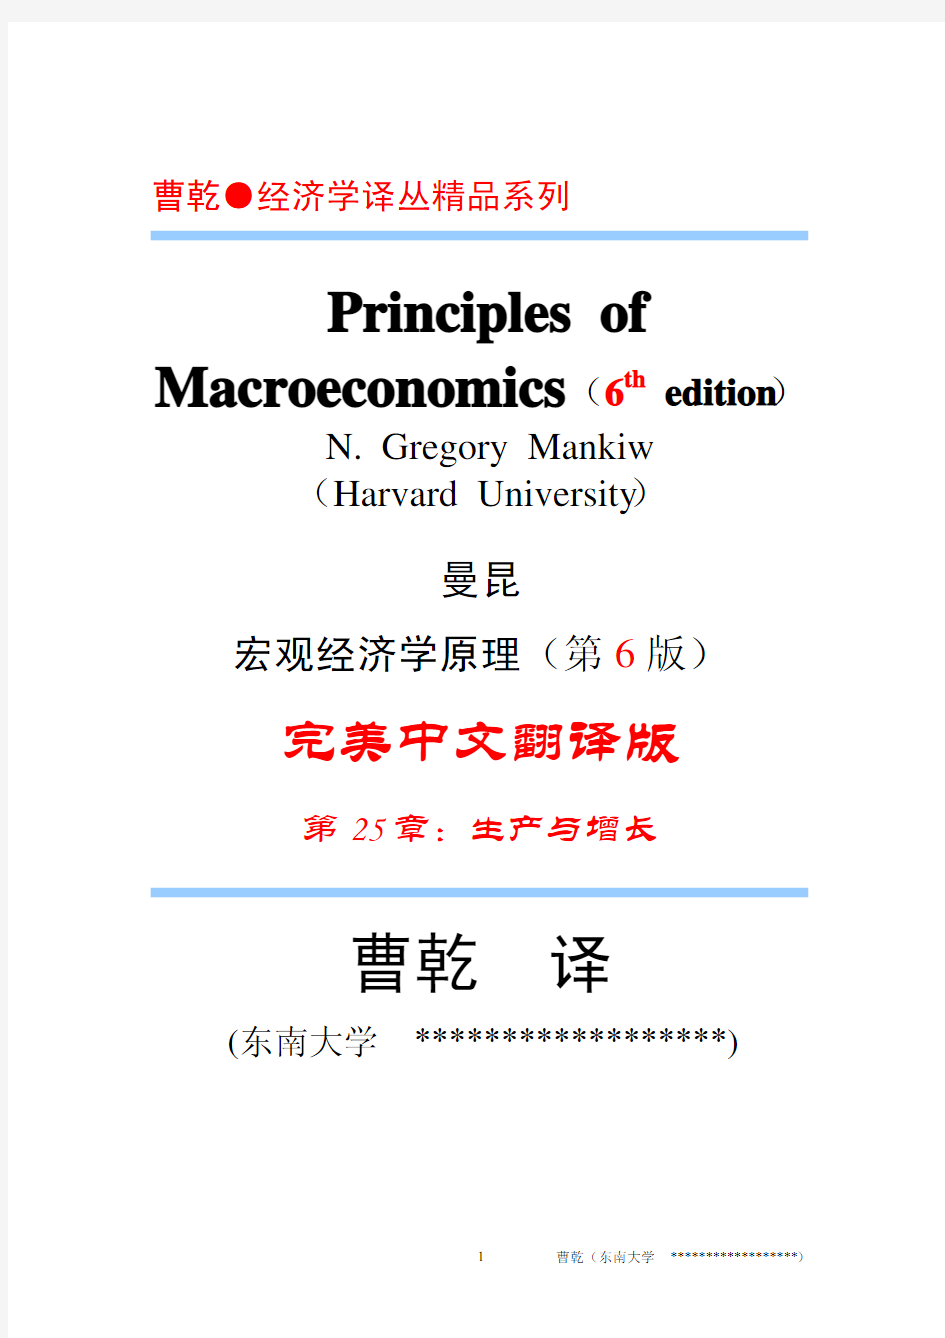 曼昆-宏观经济学原理-中文第六版-第6版-第25章-东南大学曹干